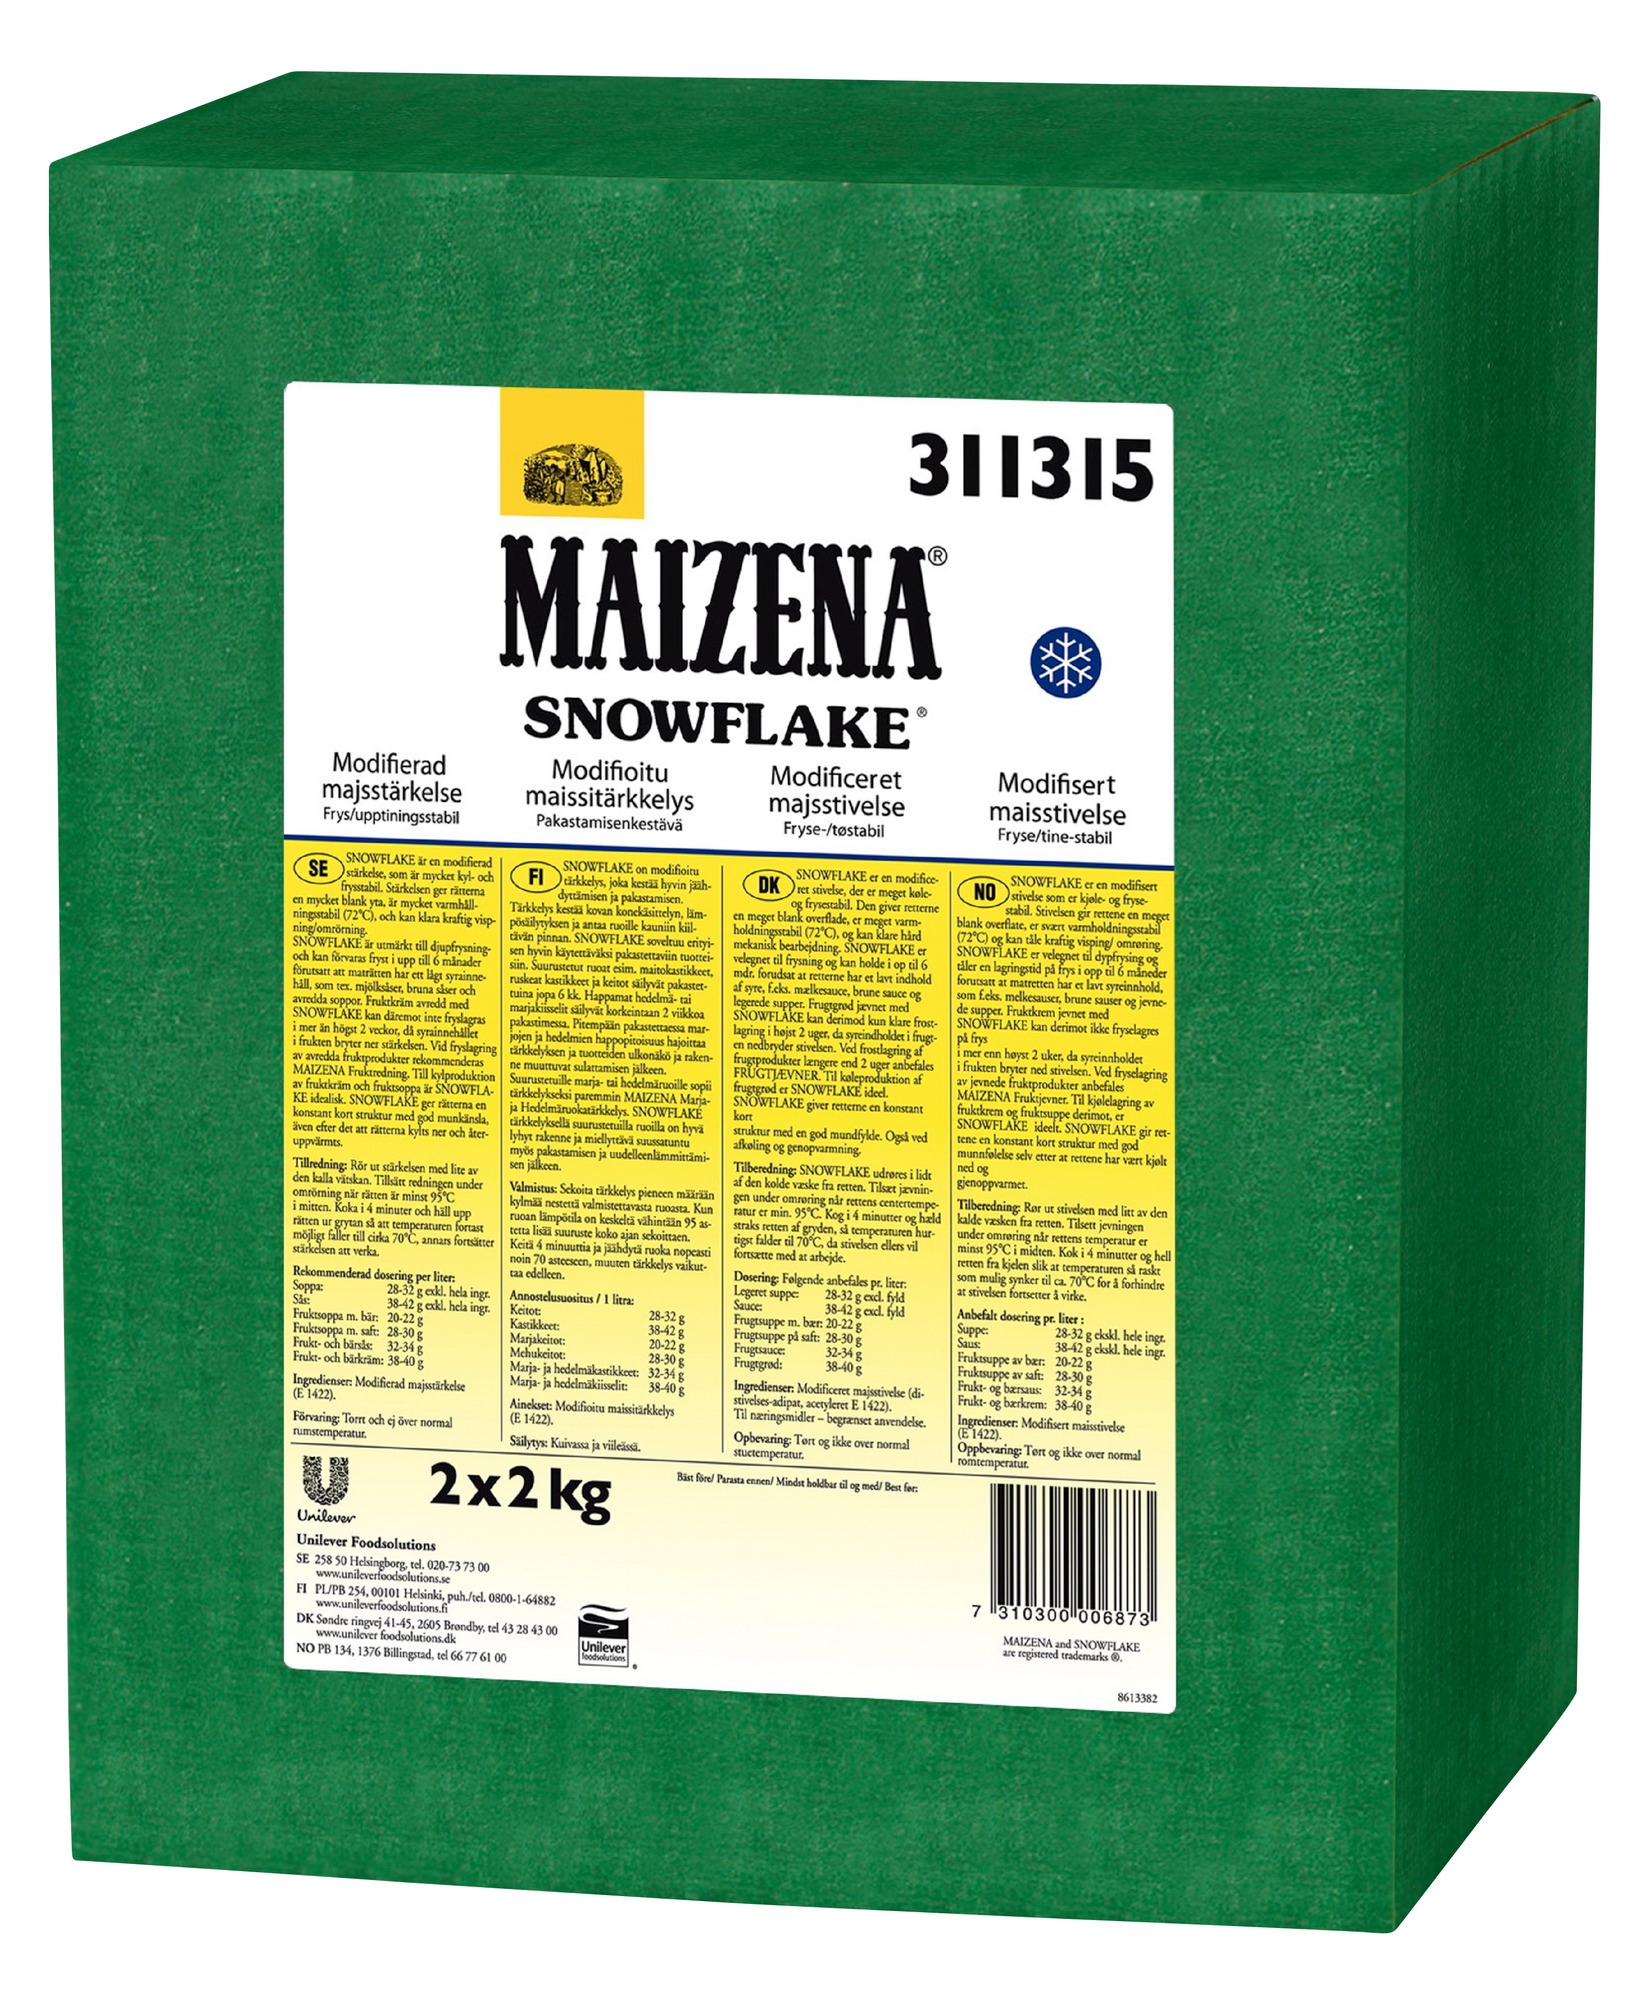 Maizena snowflake       2x2kg